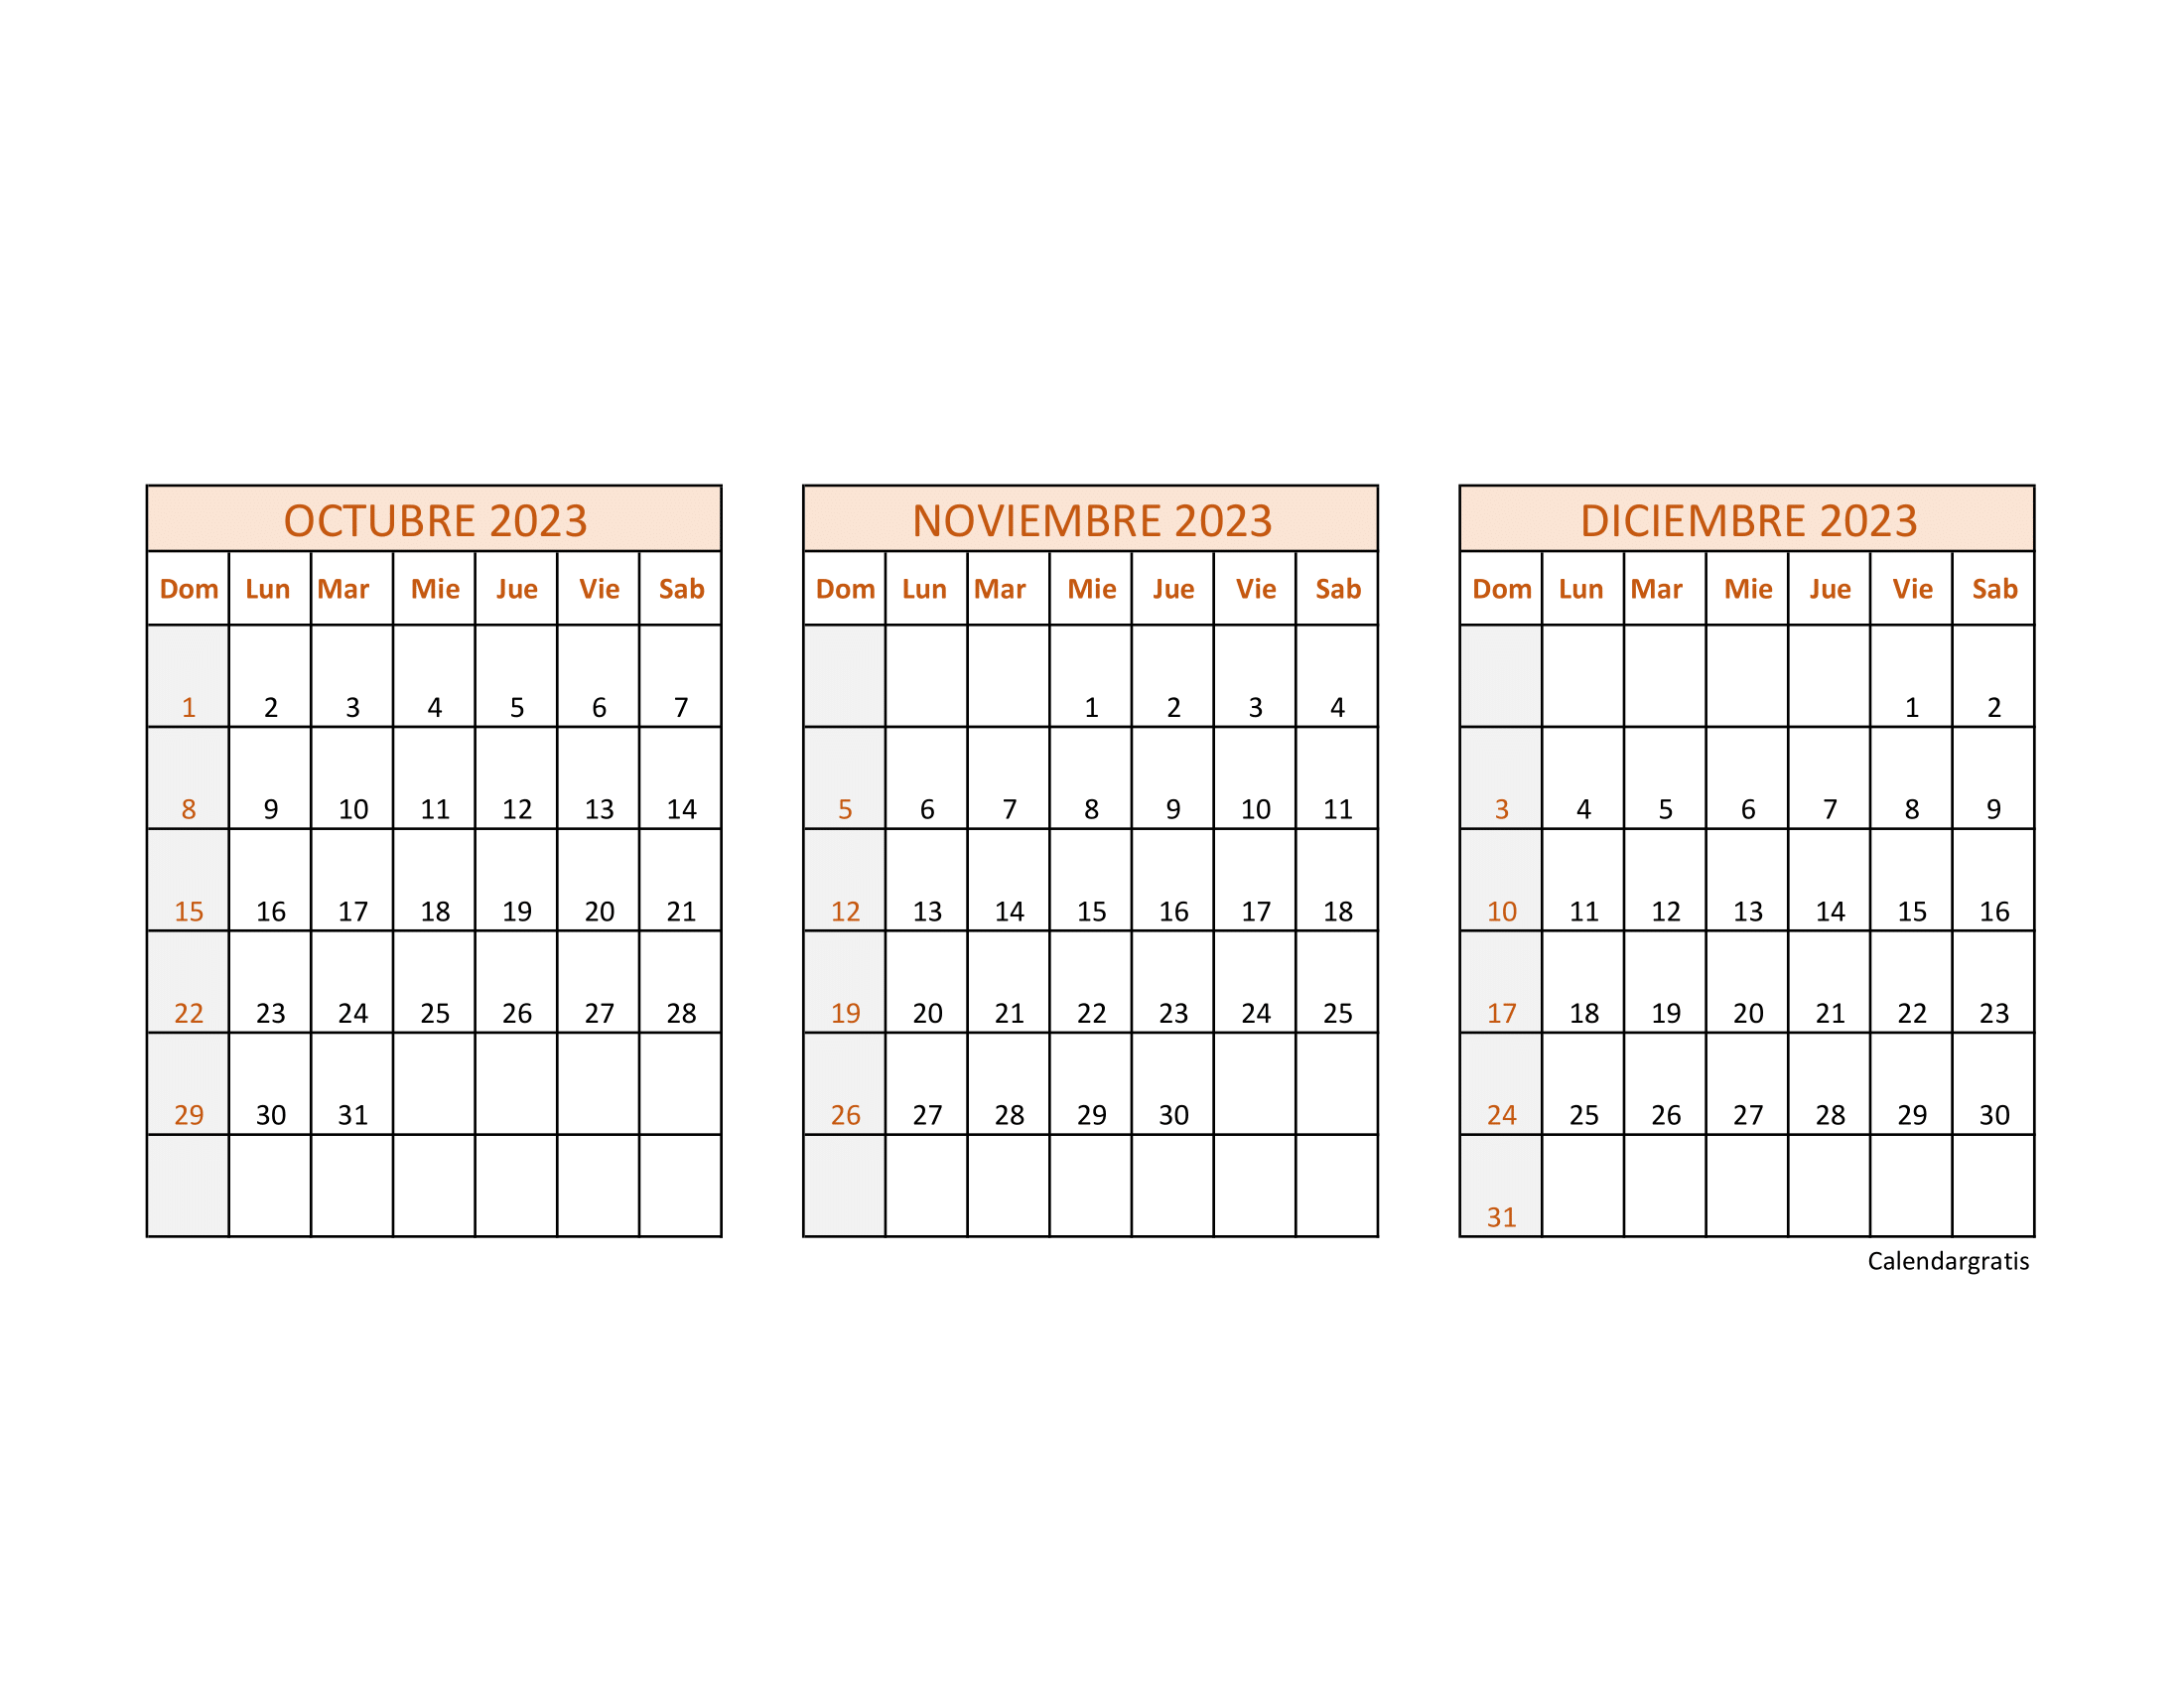 Calendario mensual de octubre, noviembre y diciembre de 2023